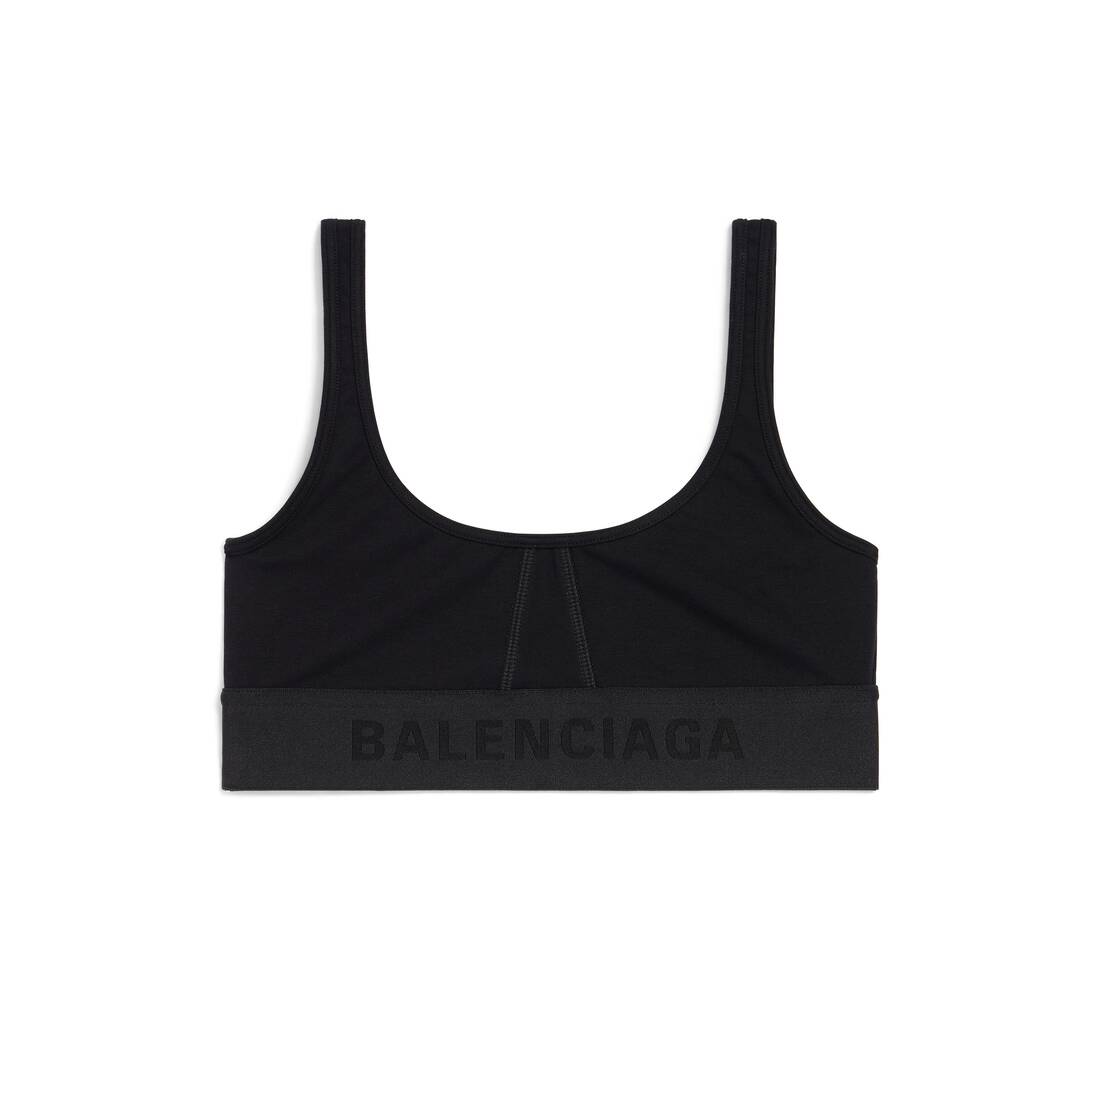 Balenciaga Sports Bras for Women